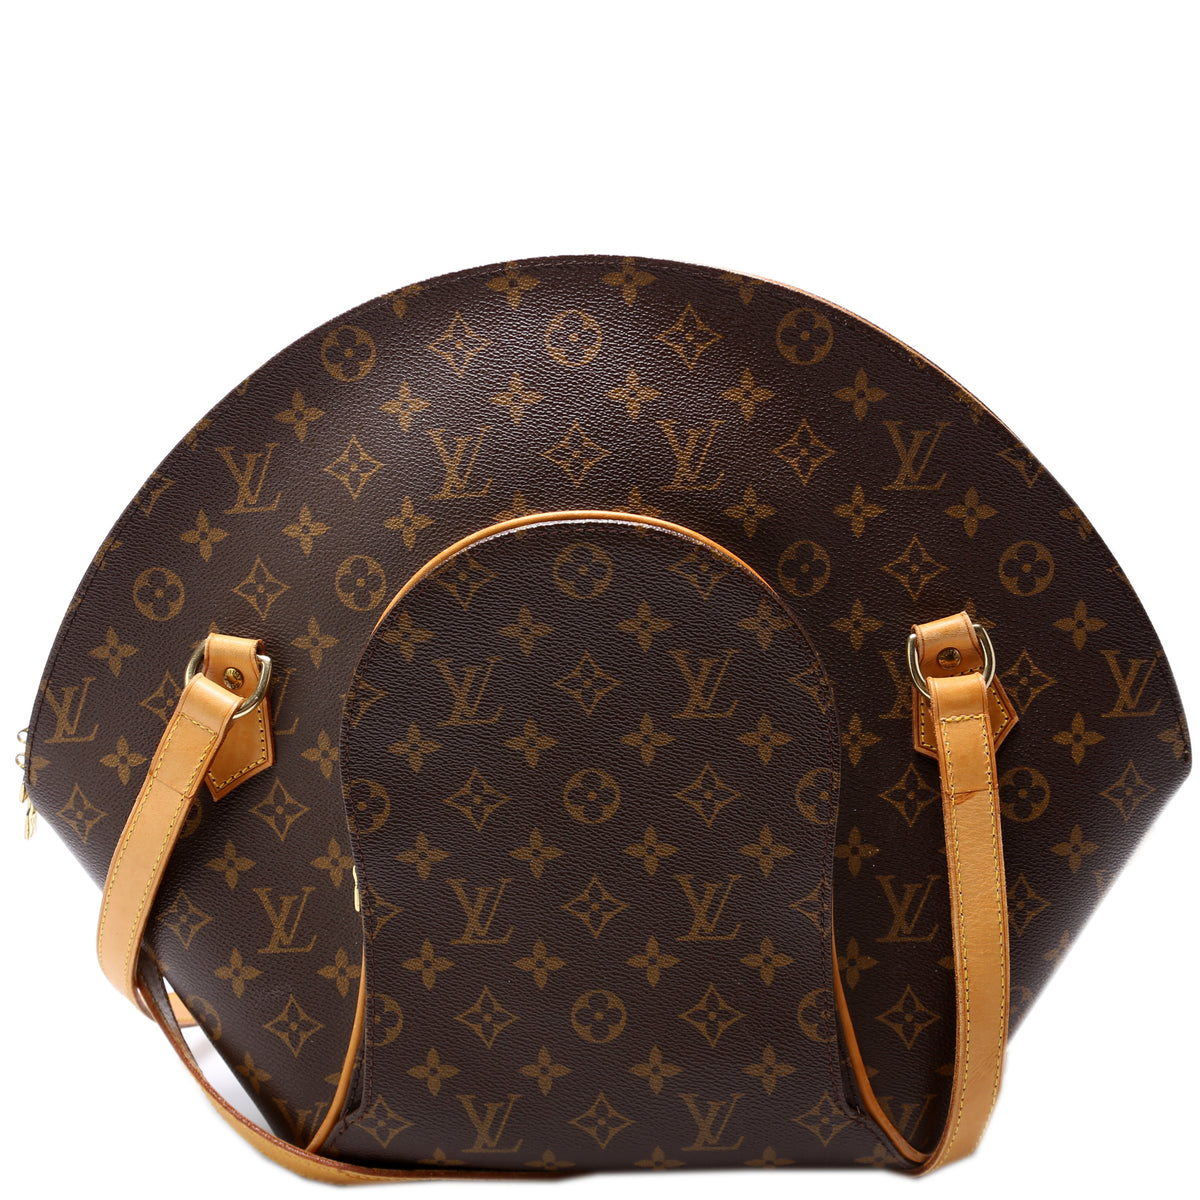 Louis Vuitton Ellipse PM Monogram Handbag Review